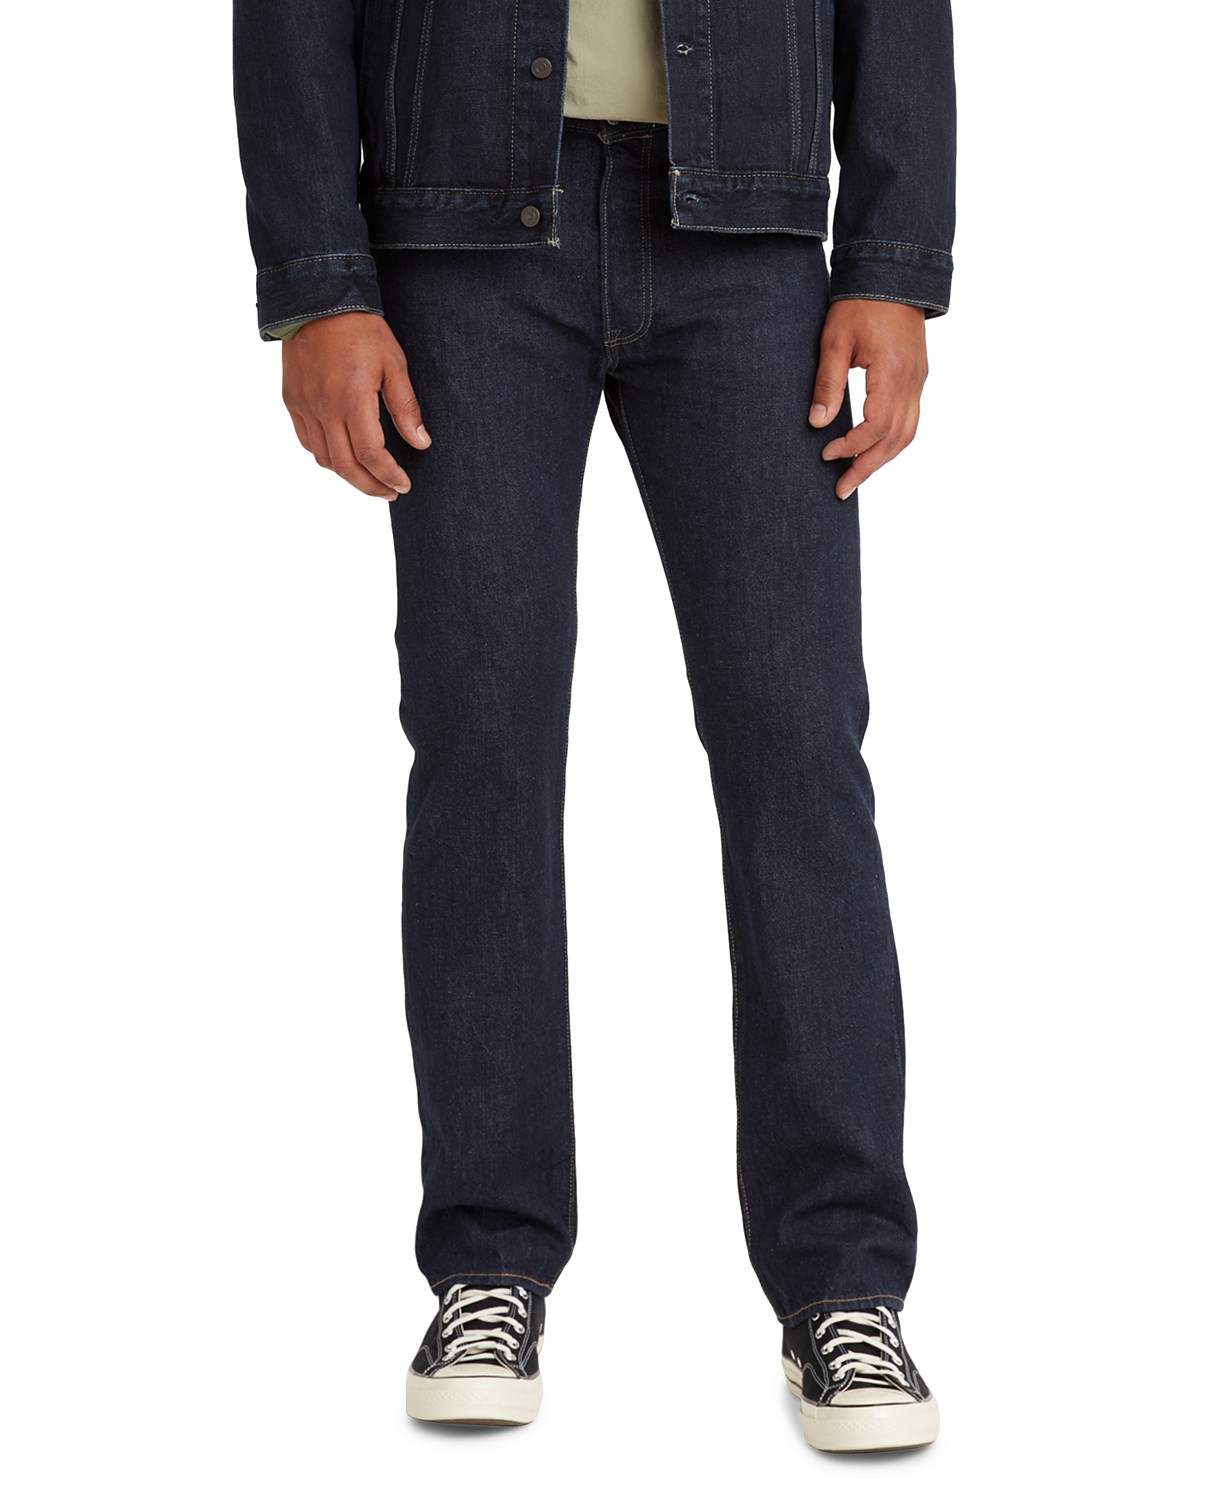 Mens 501 Originals Premium Straight-Fit Jeans